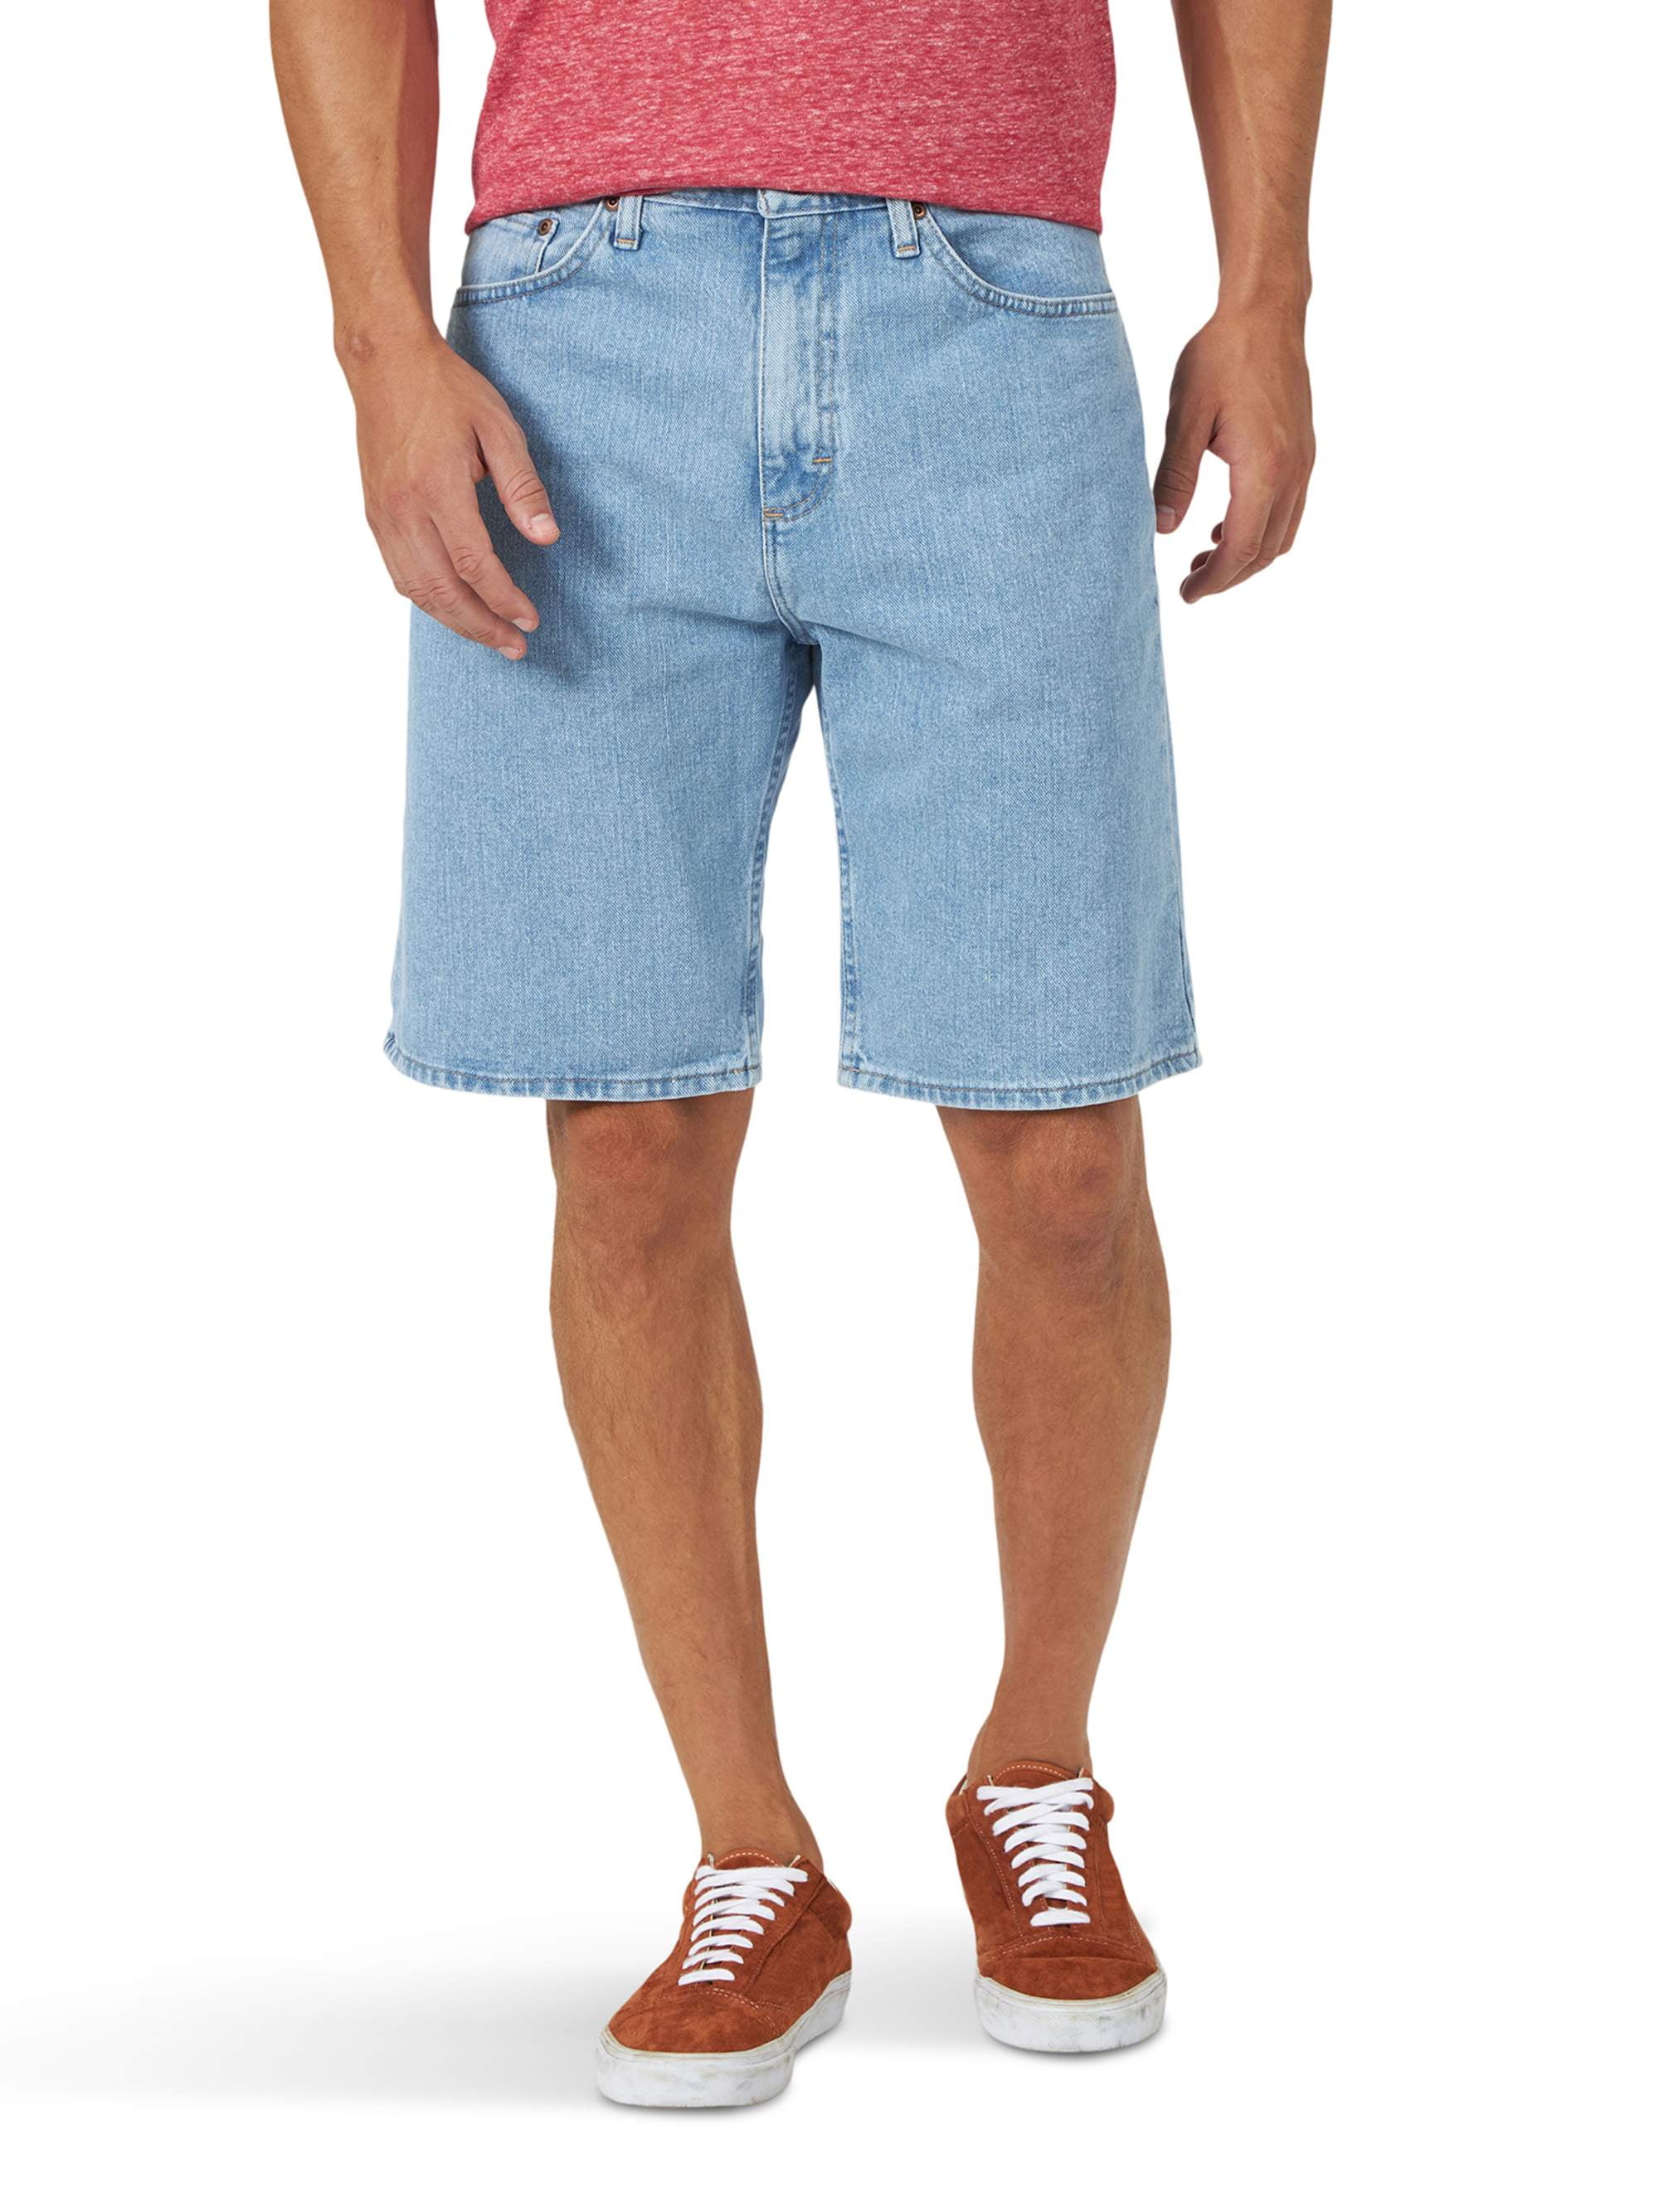 jean shorts mens big and tall